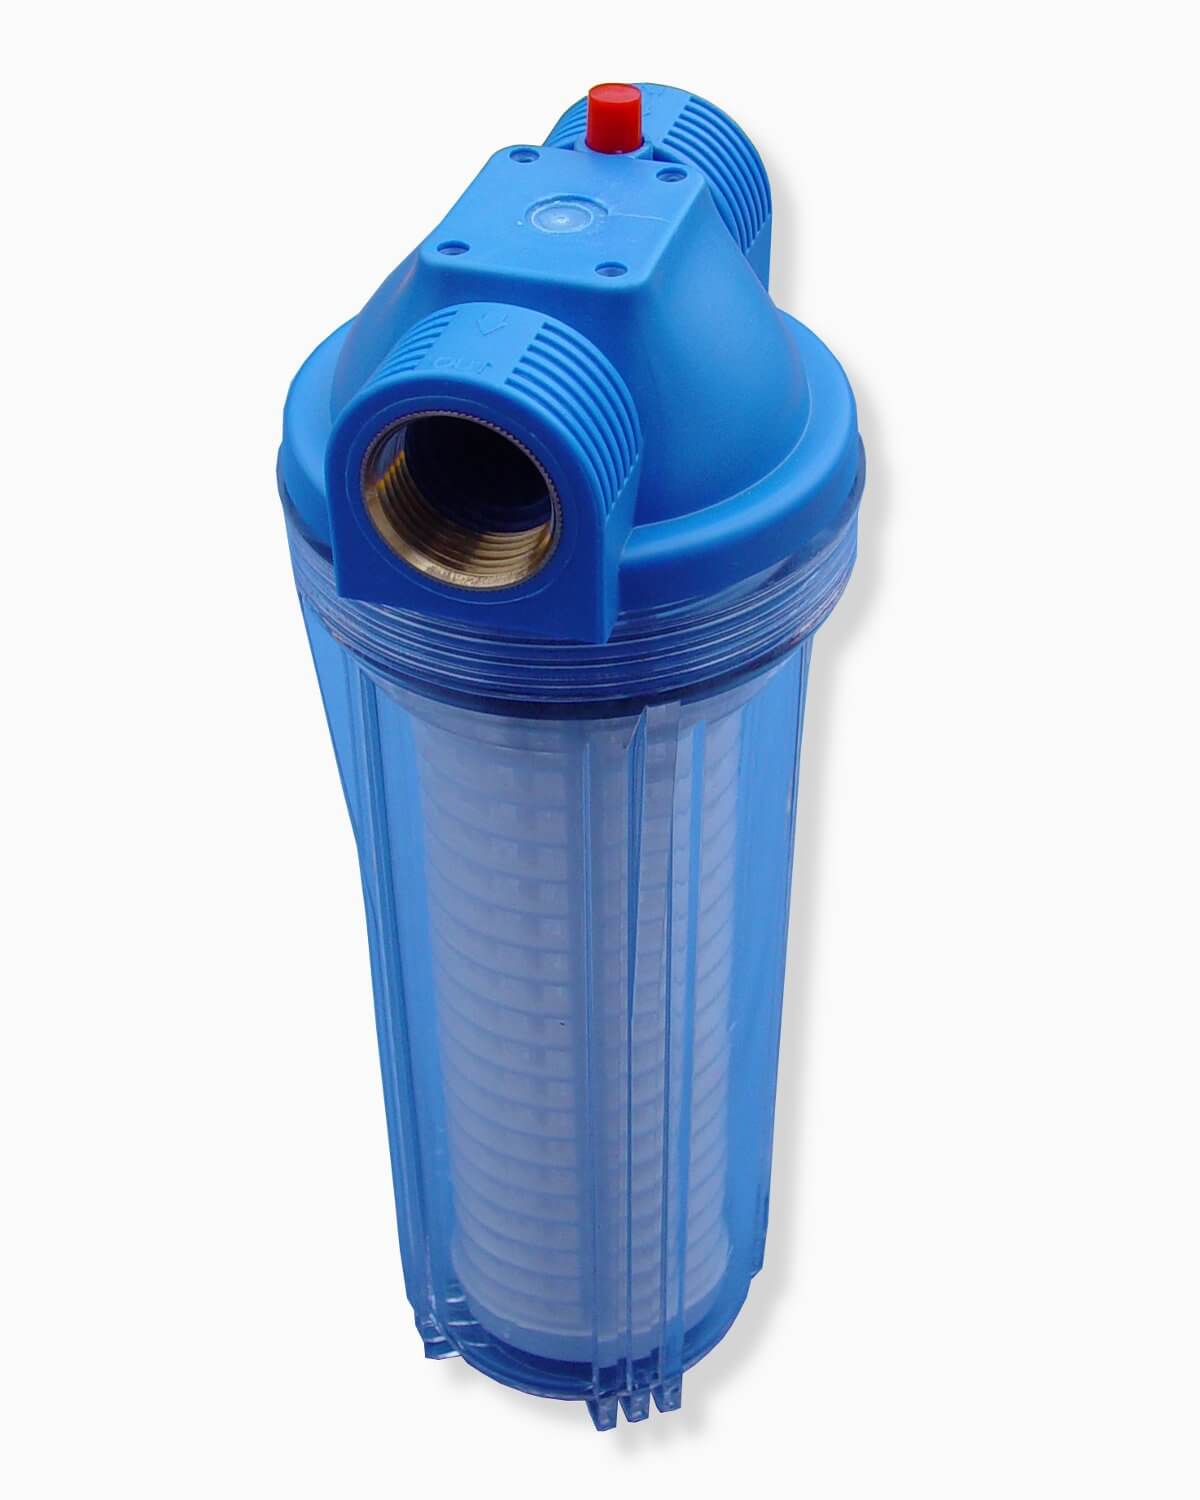 Ein blauer PURION Vorfilter 60 Mikron Wasserfilter mit einem Nylonfiltereinsatz, der Schwebstoffe effektiv aus dem Wasser entfernt, platziert auf einem sauberen weißen Hintergrund.